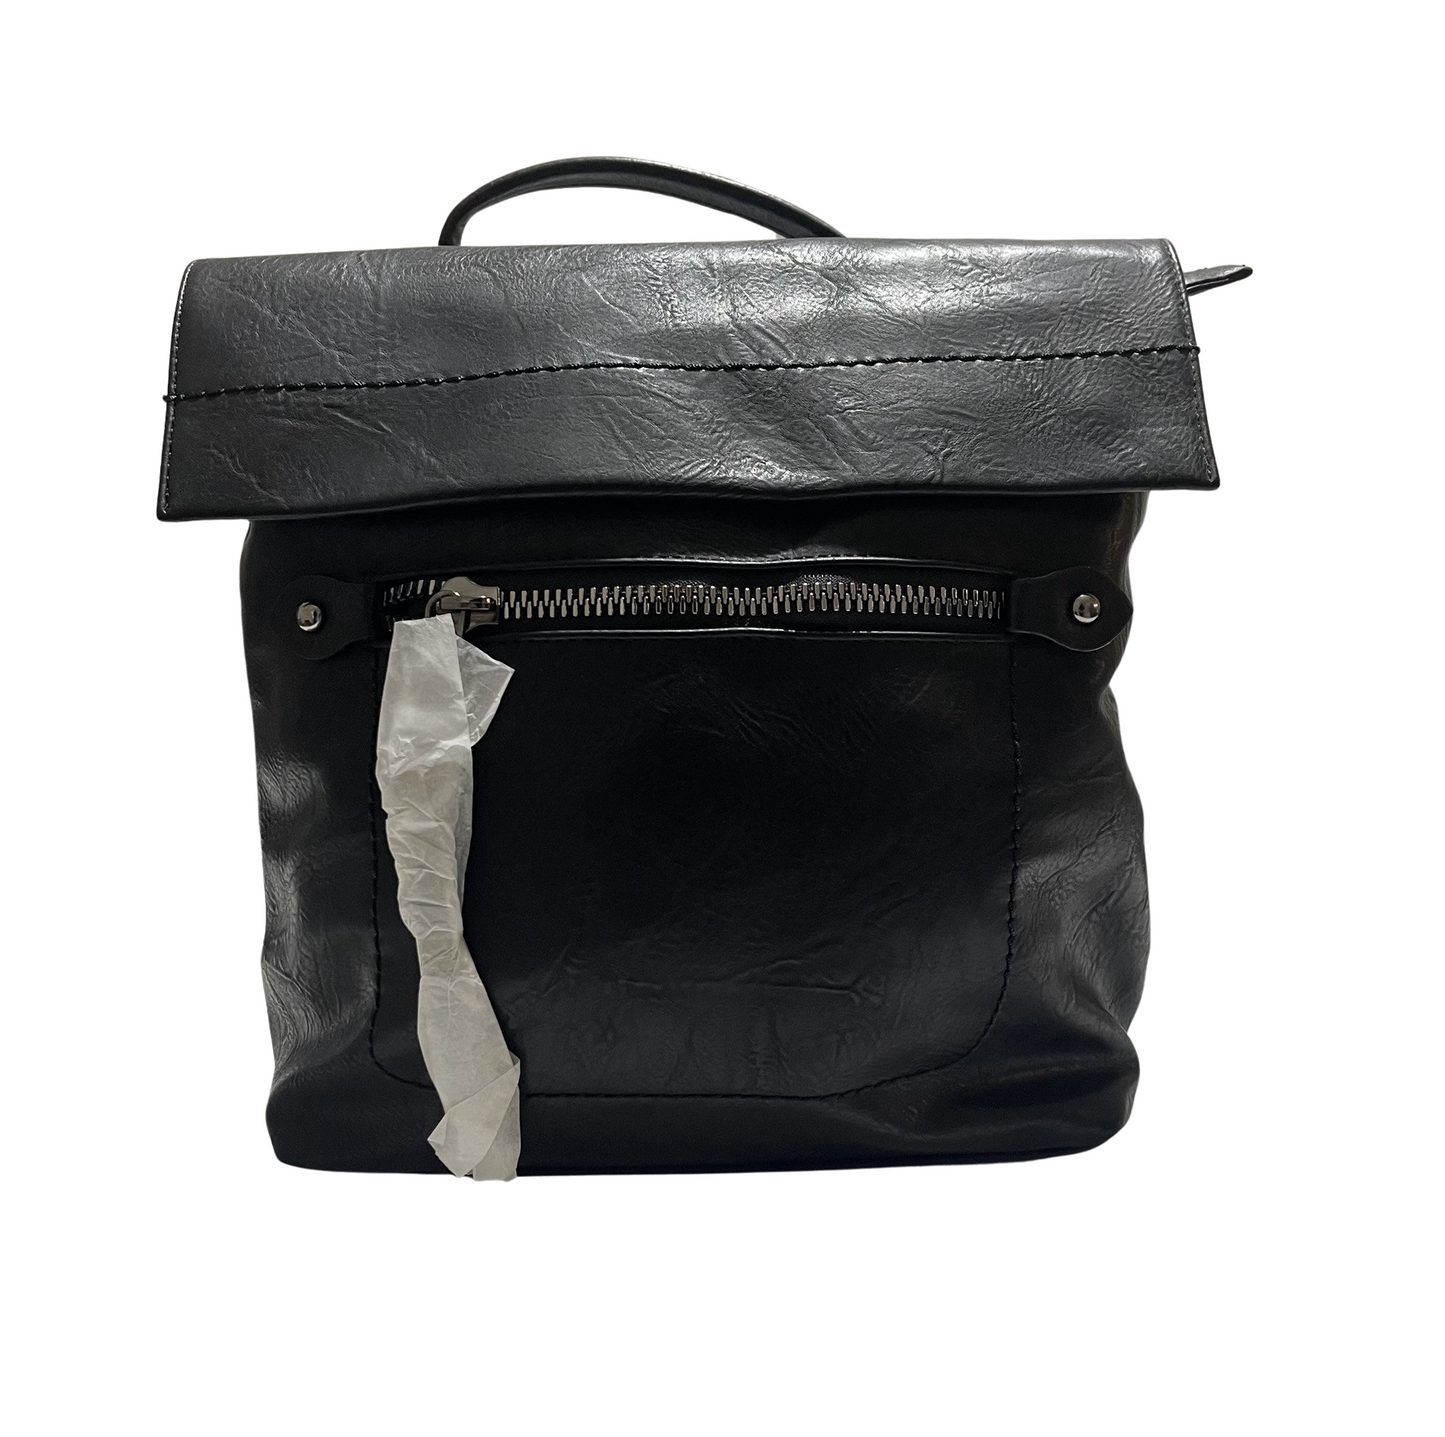 Schwarzer Rucksack mit geräumigem Doppelreißverschluss vorne und hinten